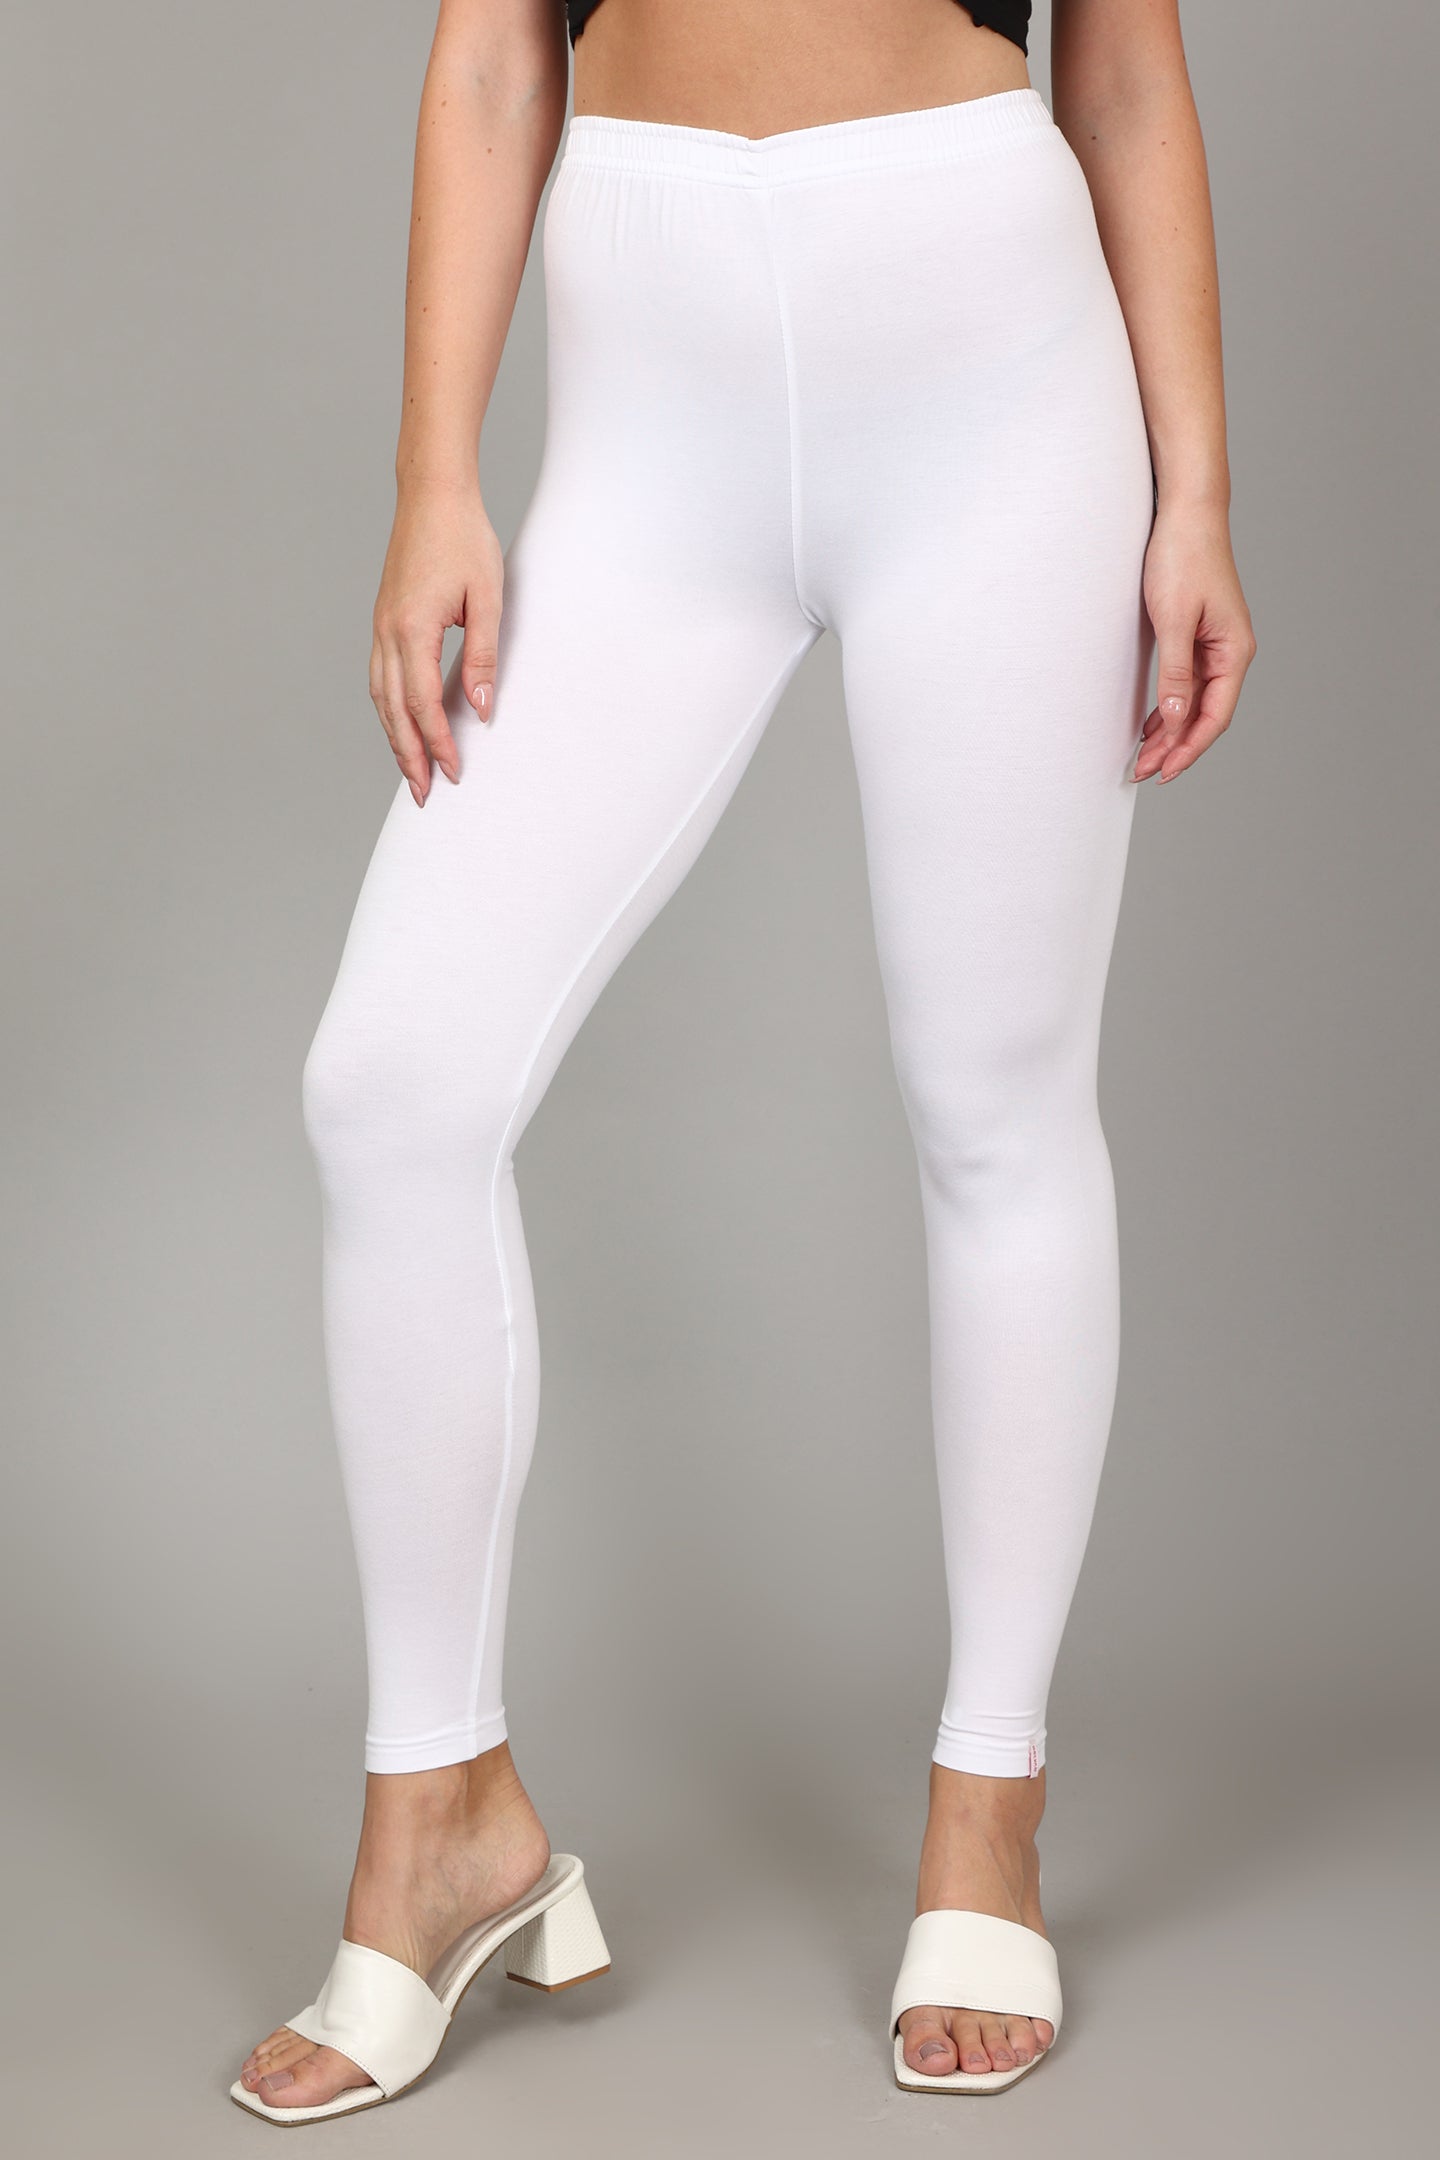 Share 255+ cotton leggings for women super hot